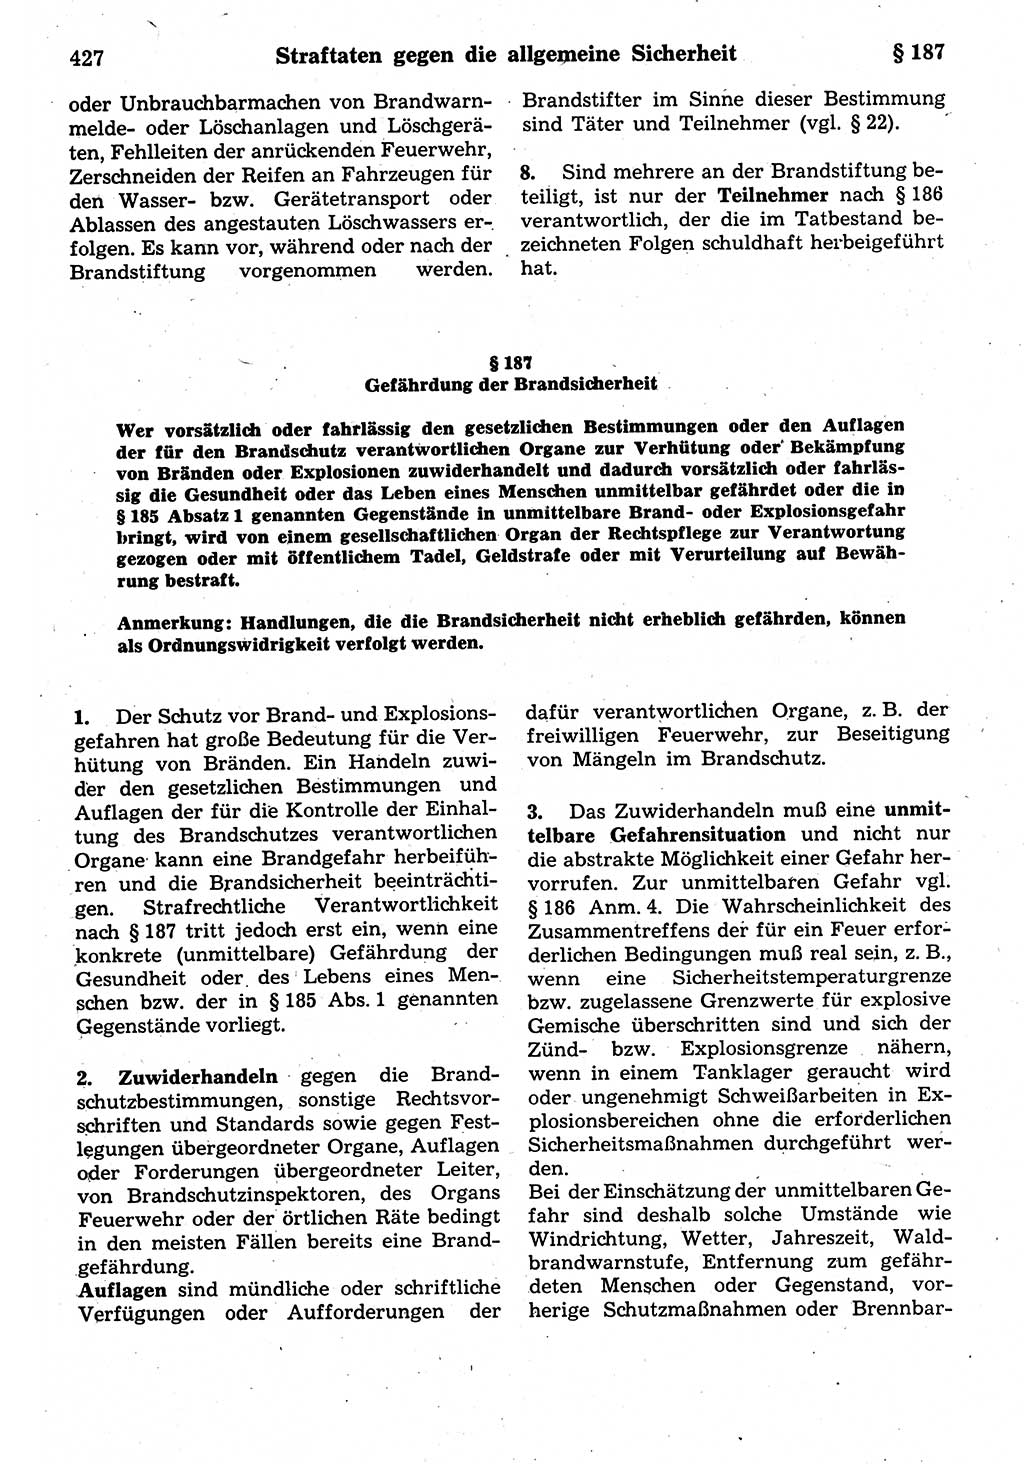 Strafrecht der Deutschen Demokratischen Republik (DDR), Kommentar zum Strafgesetzbuch (StGB) 1987, Seite 427 (Strafr. DDR Komm. StGB 1987, S. 427)